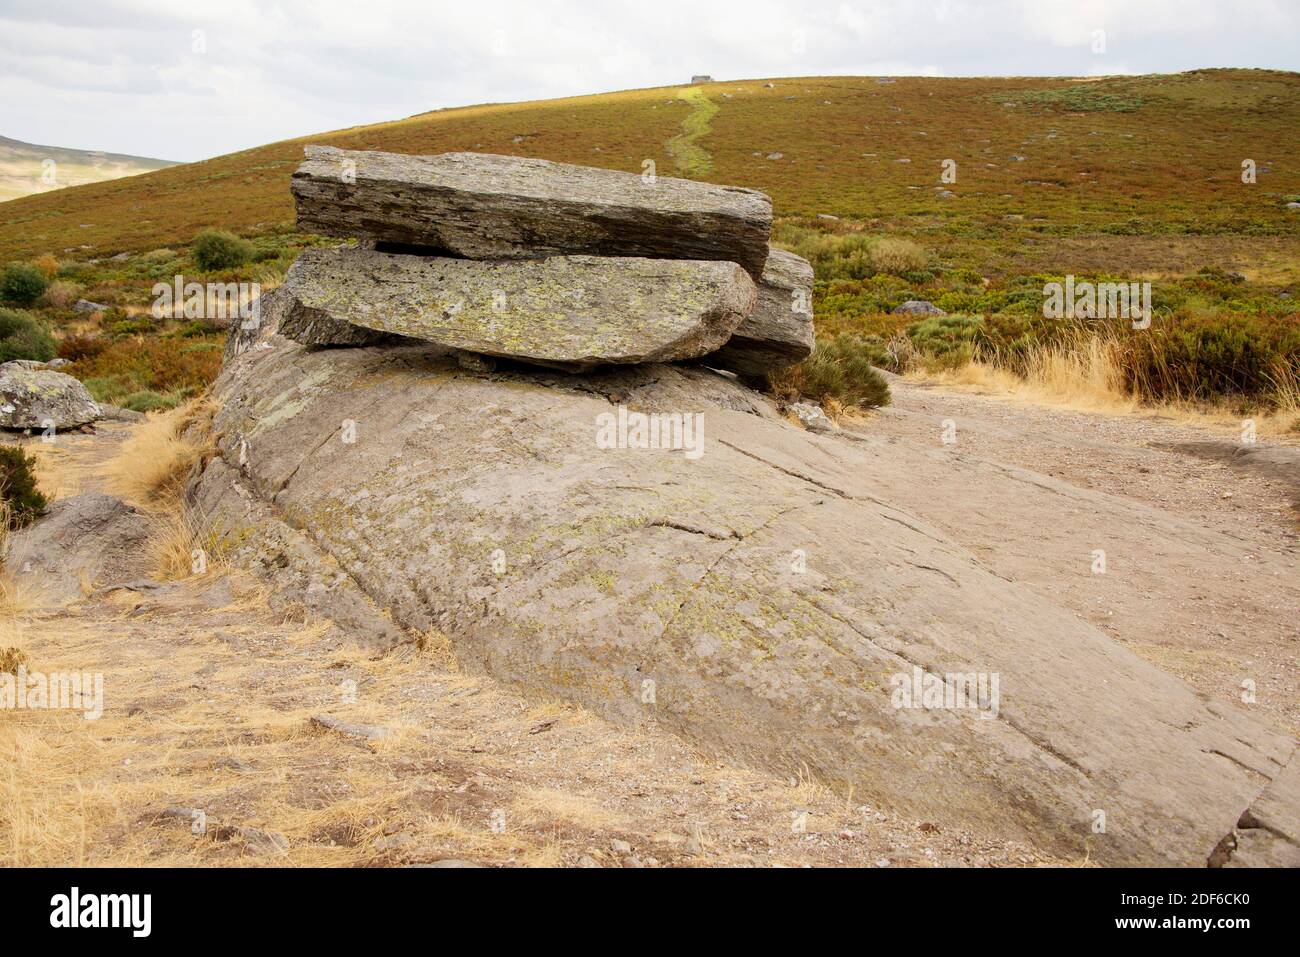 Forma de tierra glacial, espalda de oveja con estrías. Sanabria, Zamora, Castilla y León, España. Foto de stock